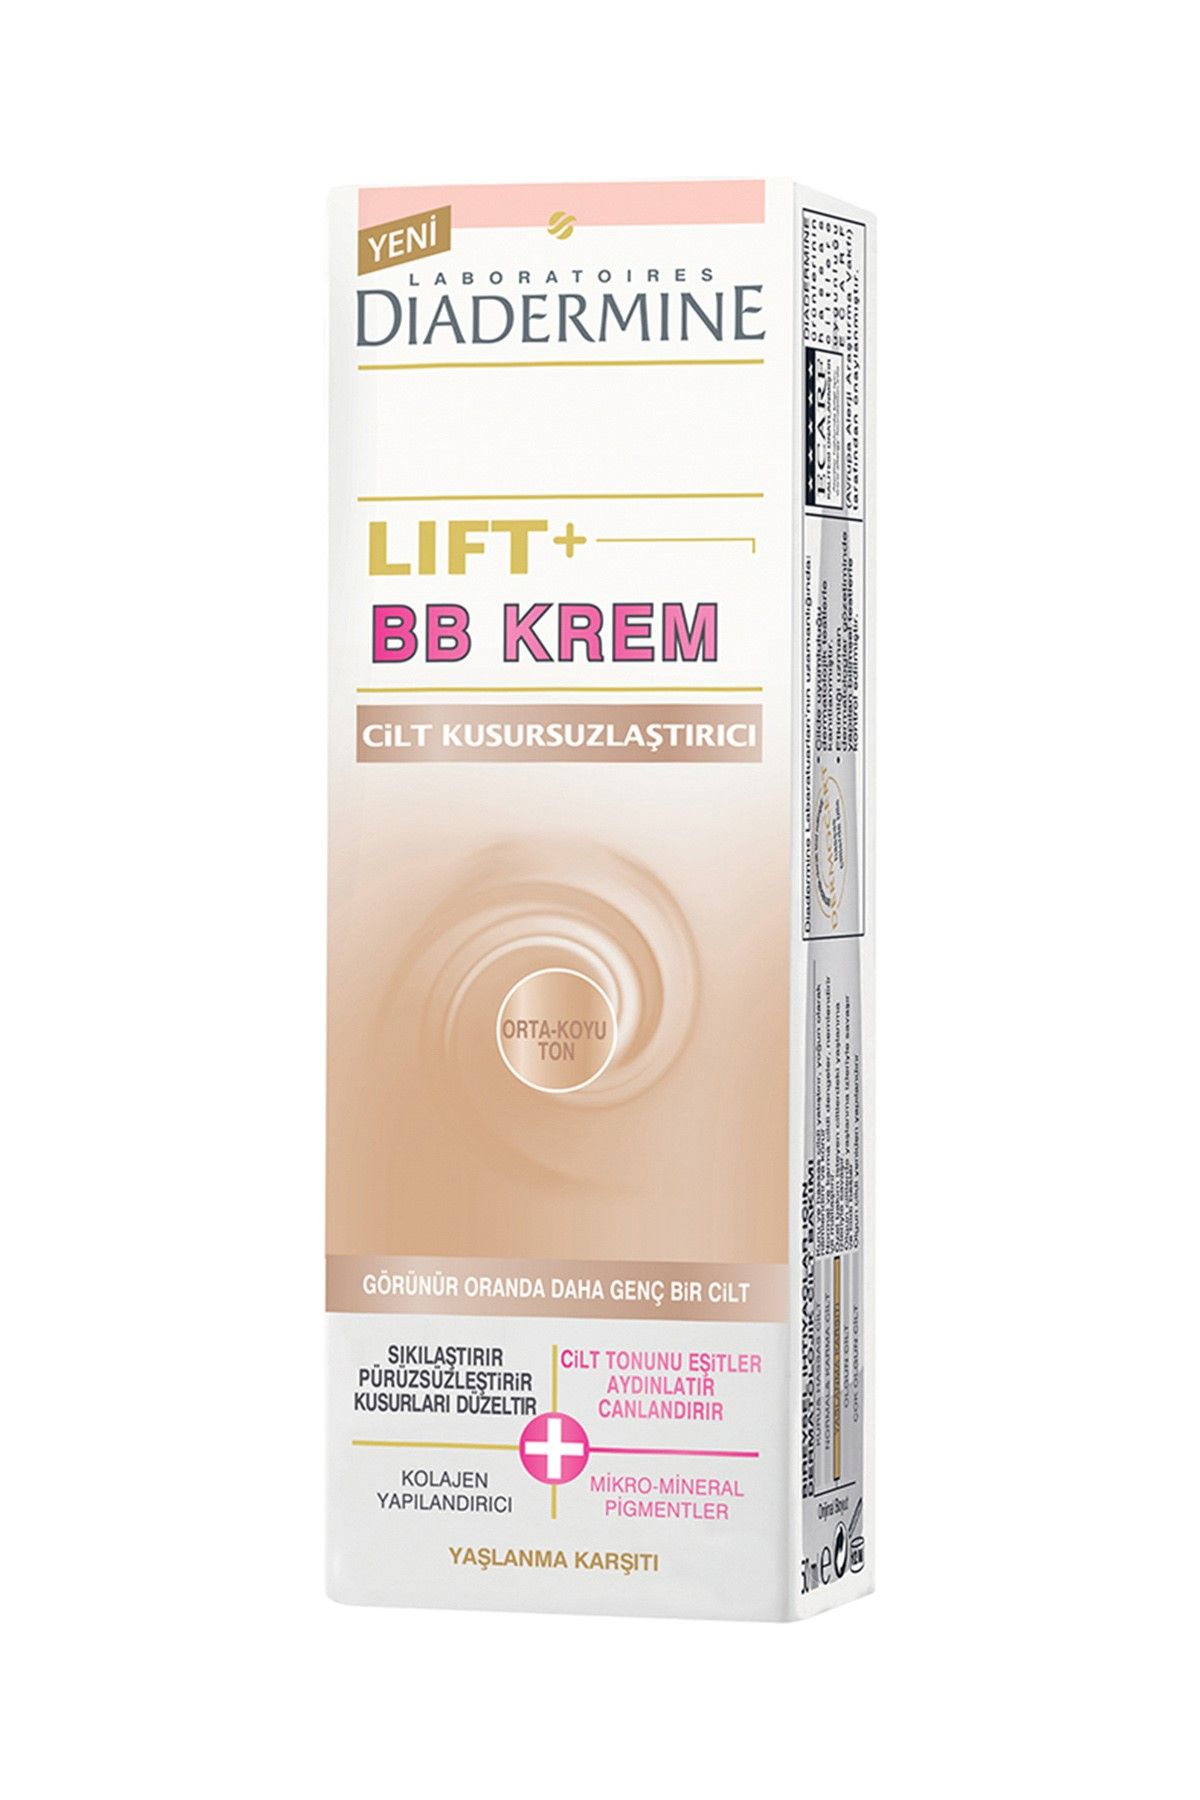 Diadermine BB Tüp Krem - Diadermine Lift+ Orta Ton 50 ml